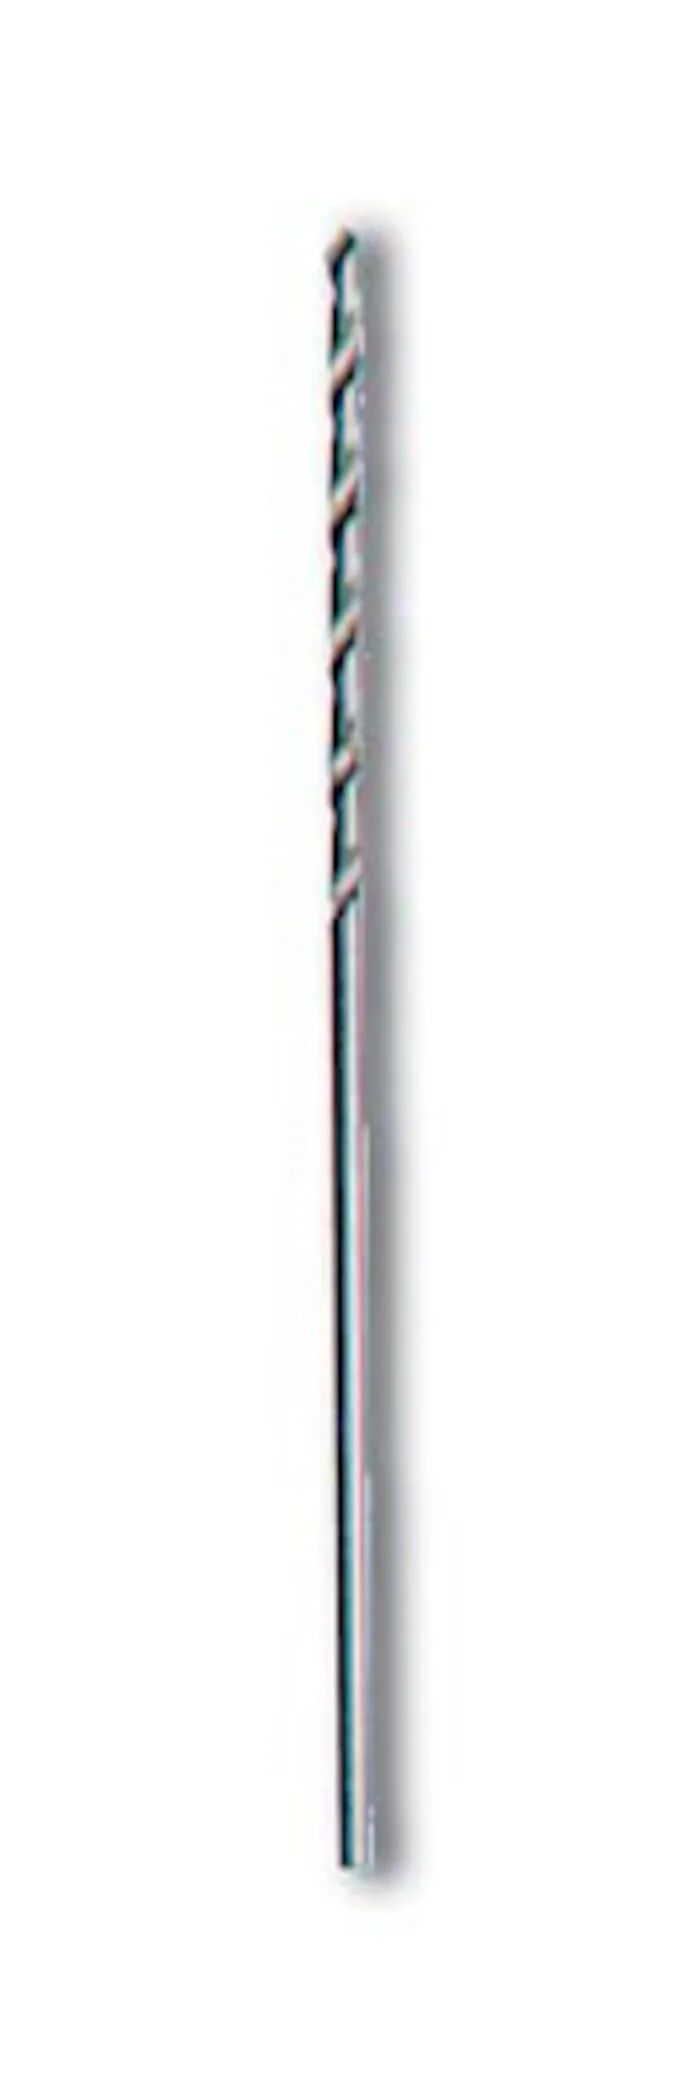 HSS-stålbor, 10-pk. 0,6 mm